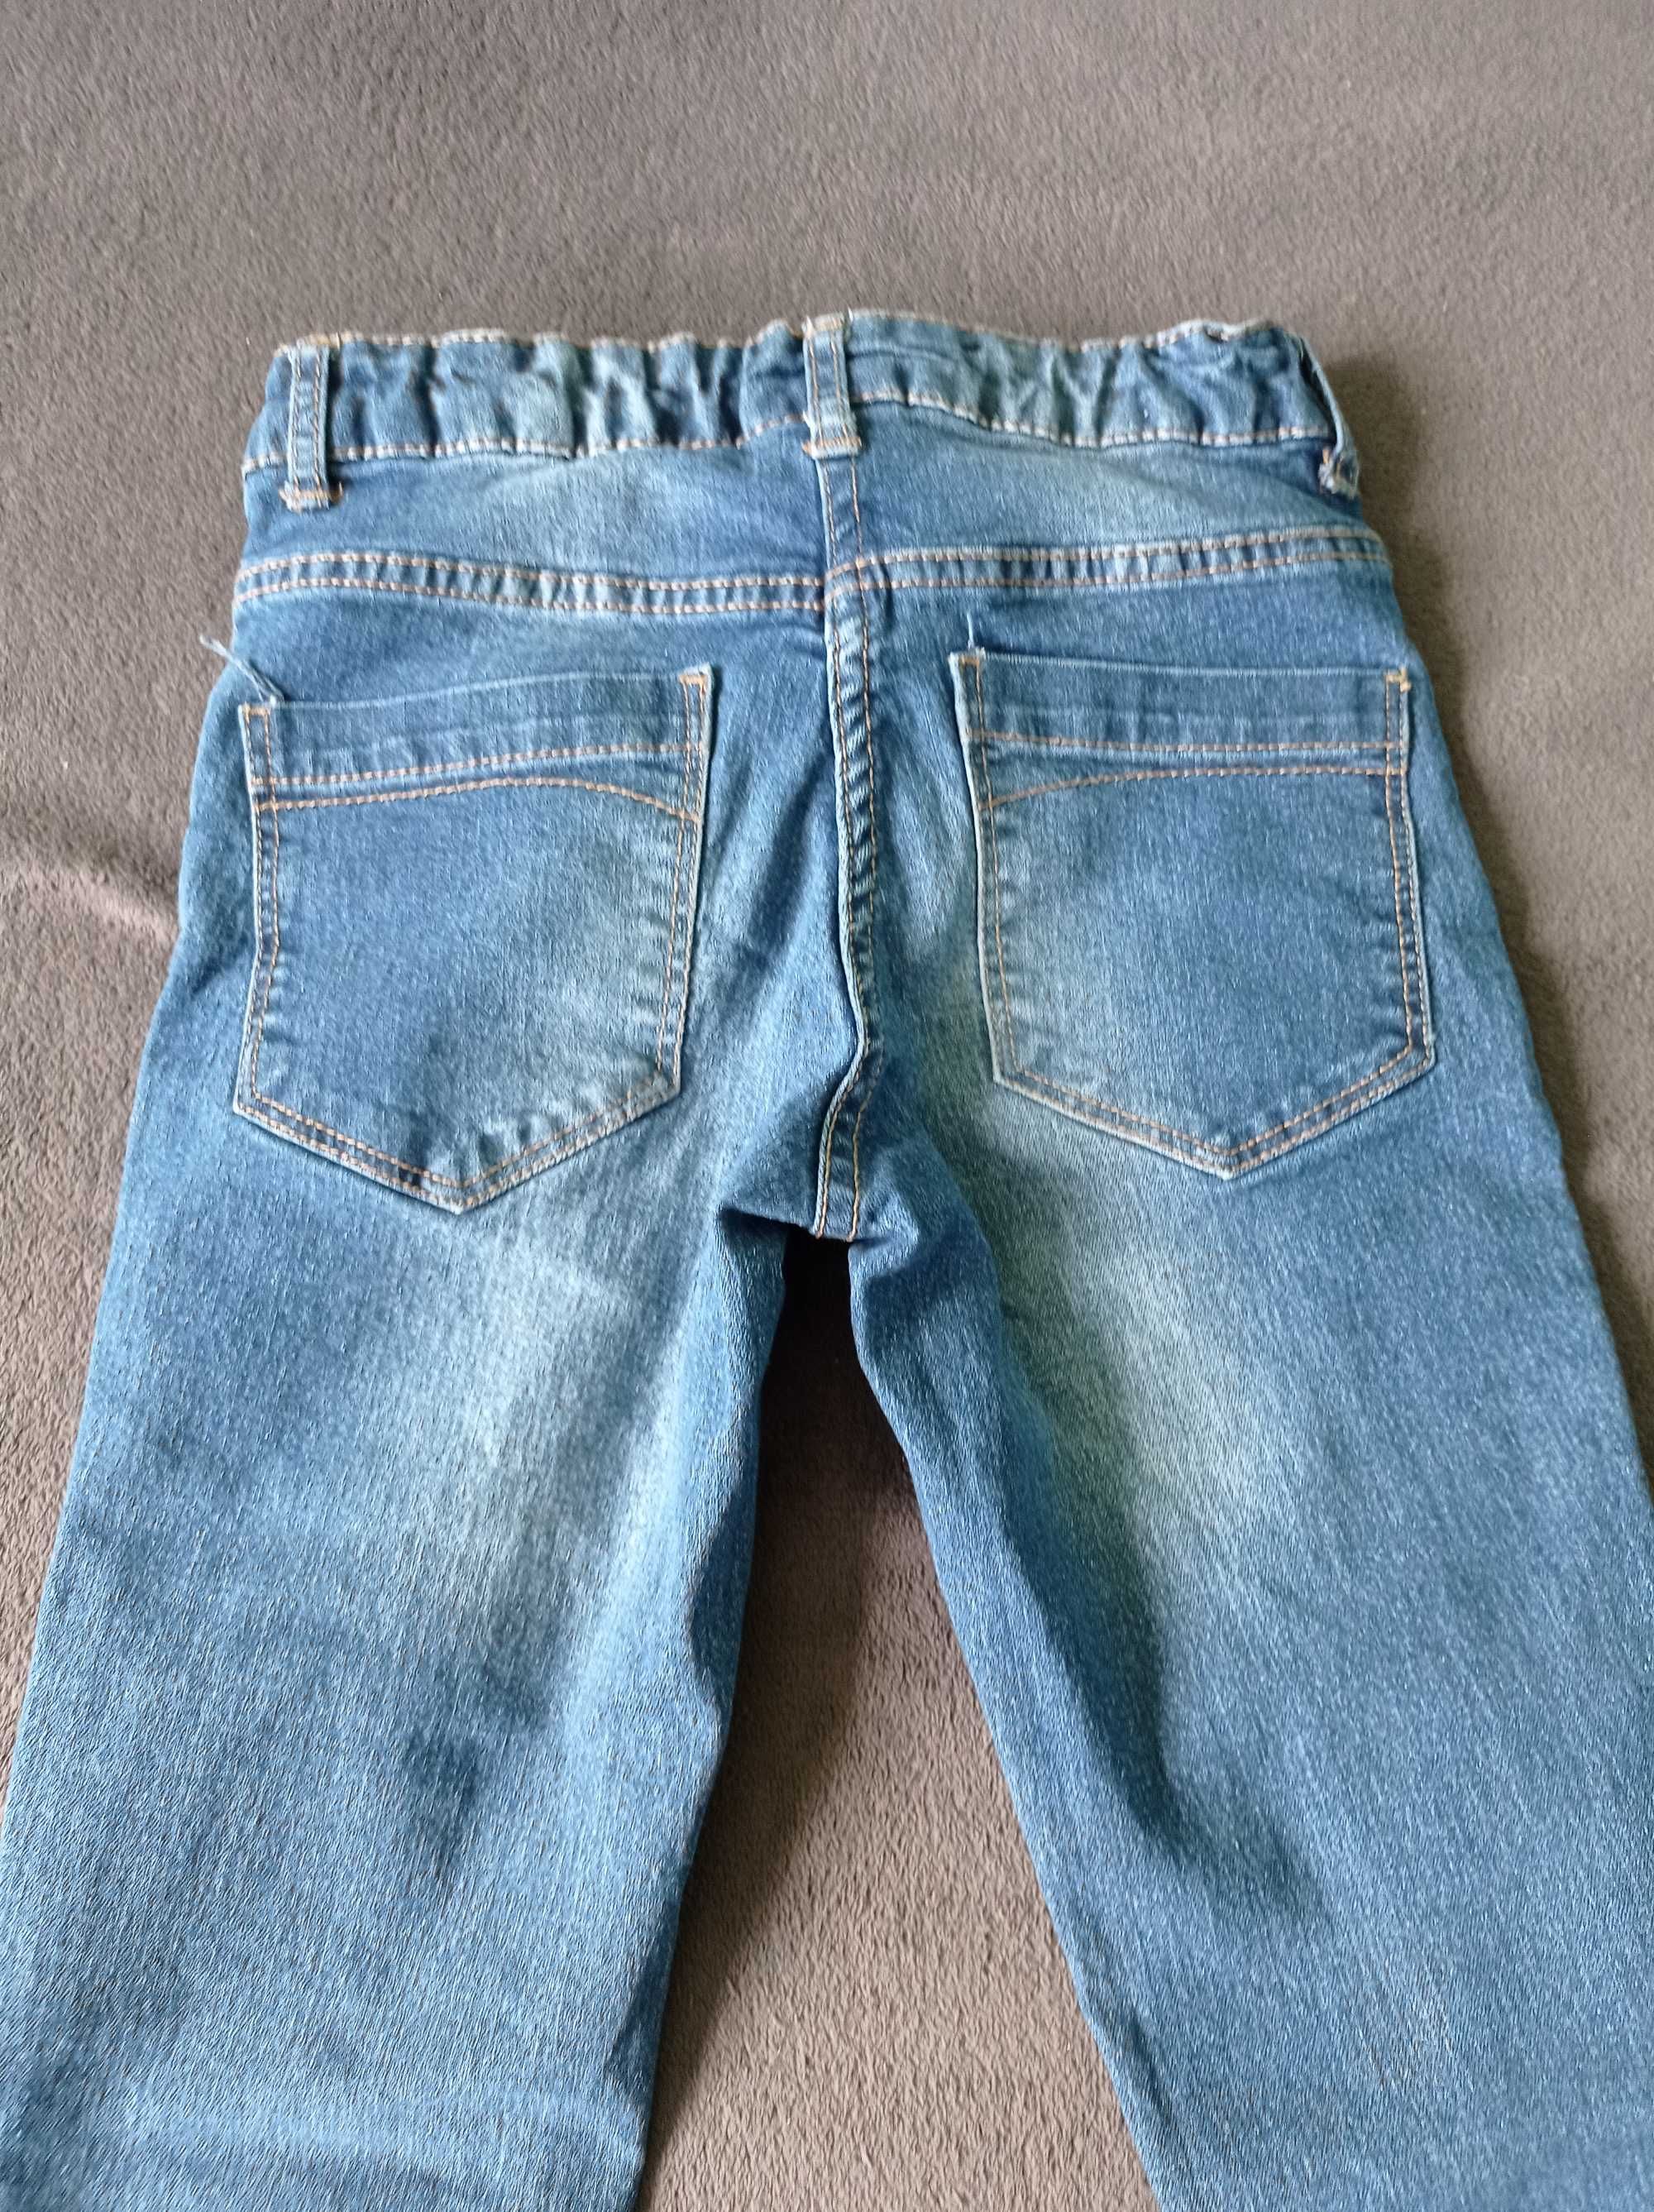 Spodnie jeans rurki r.140